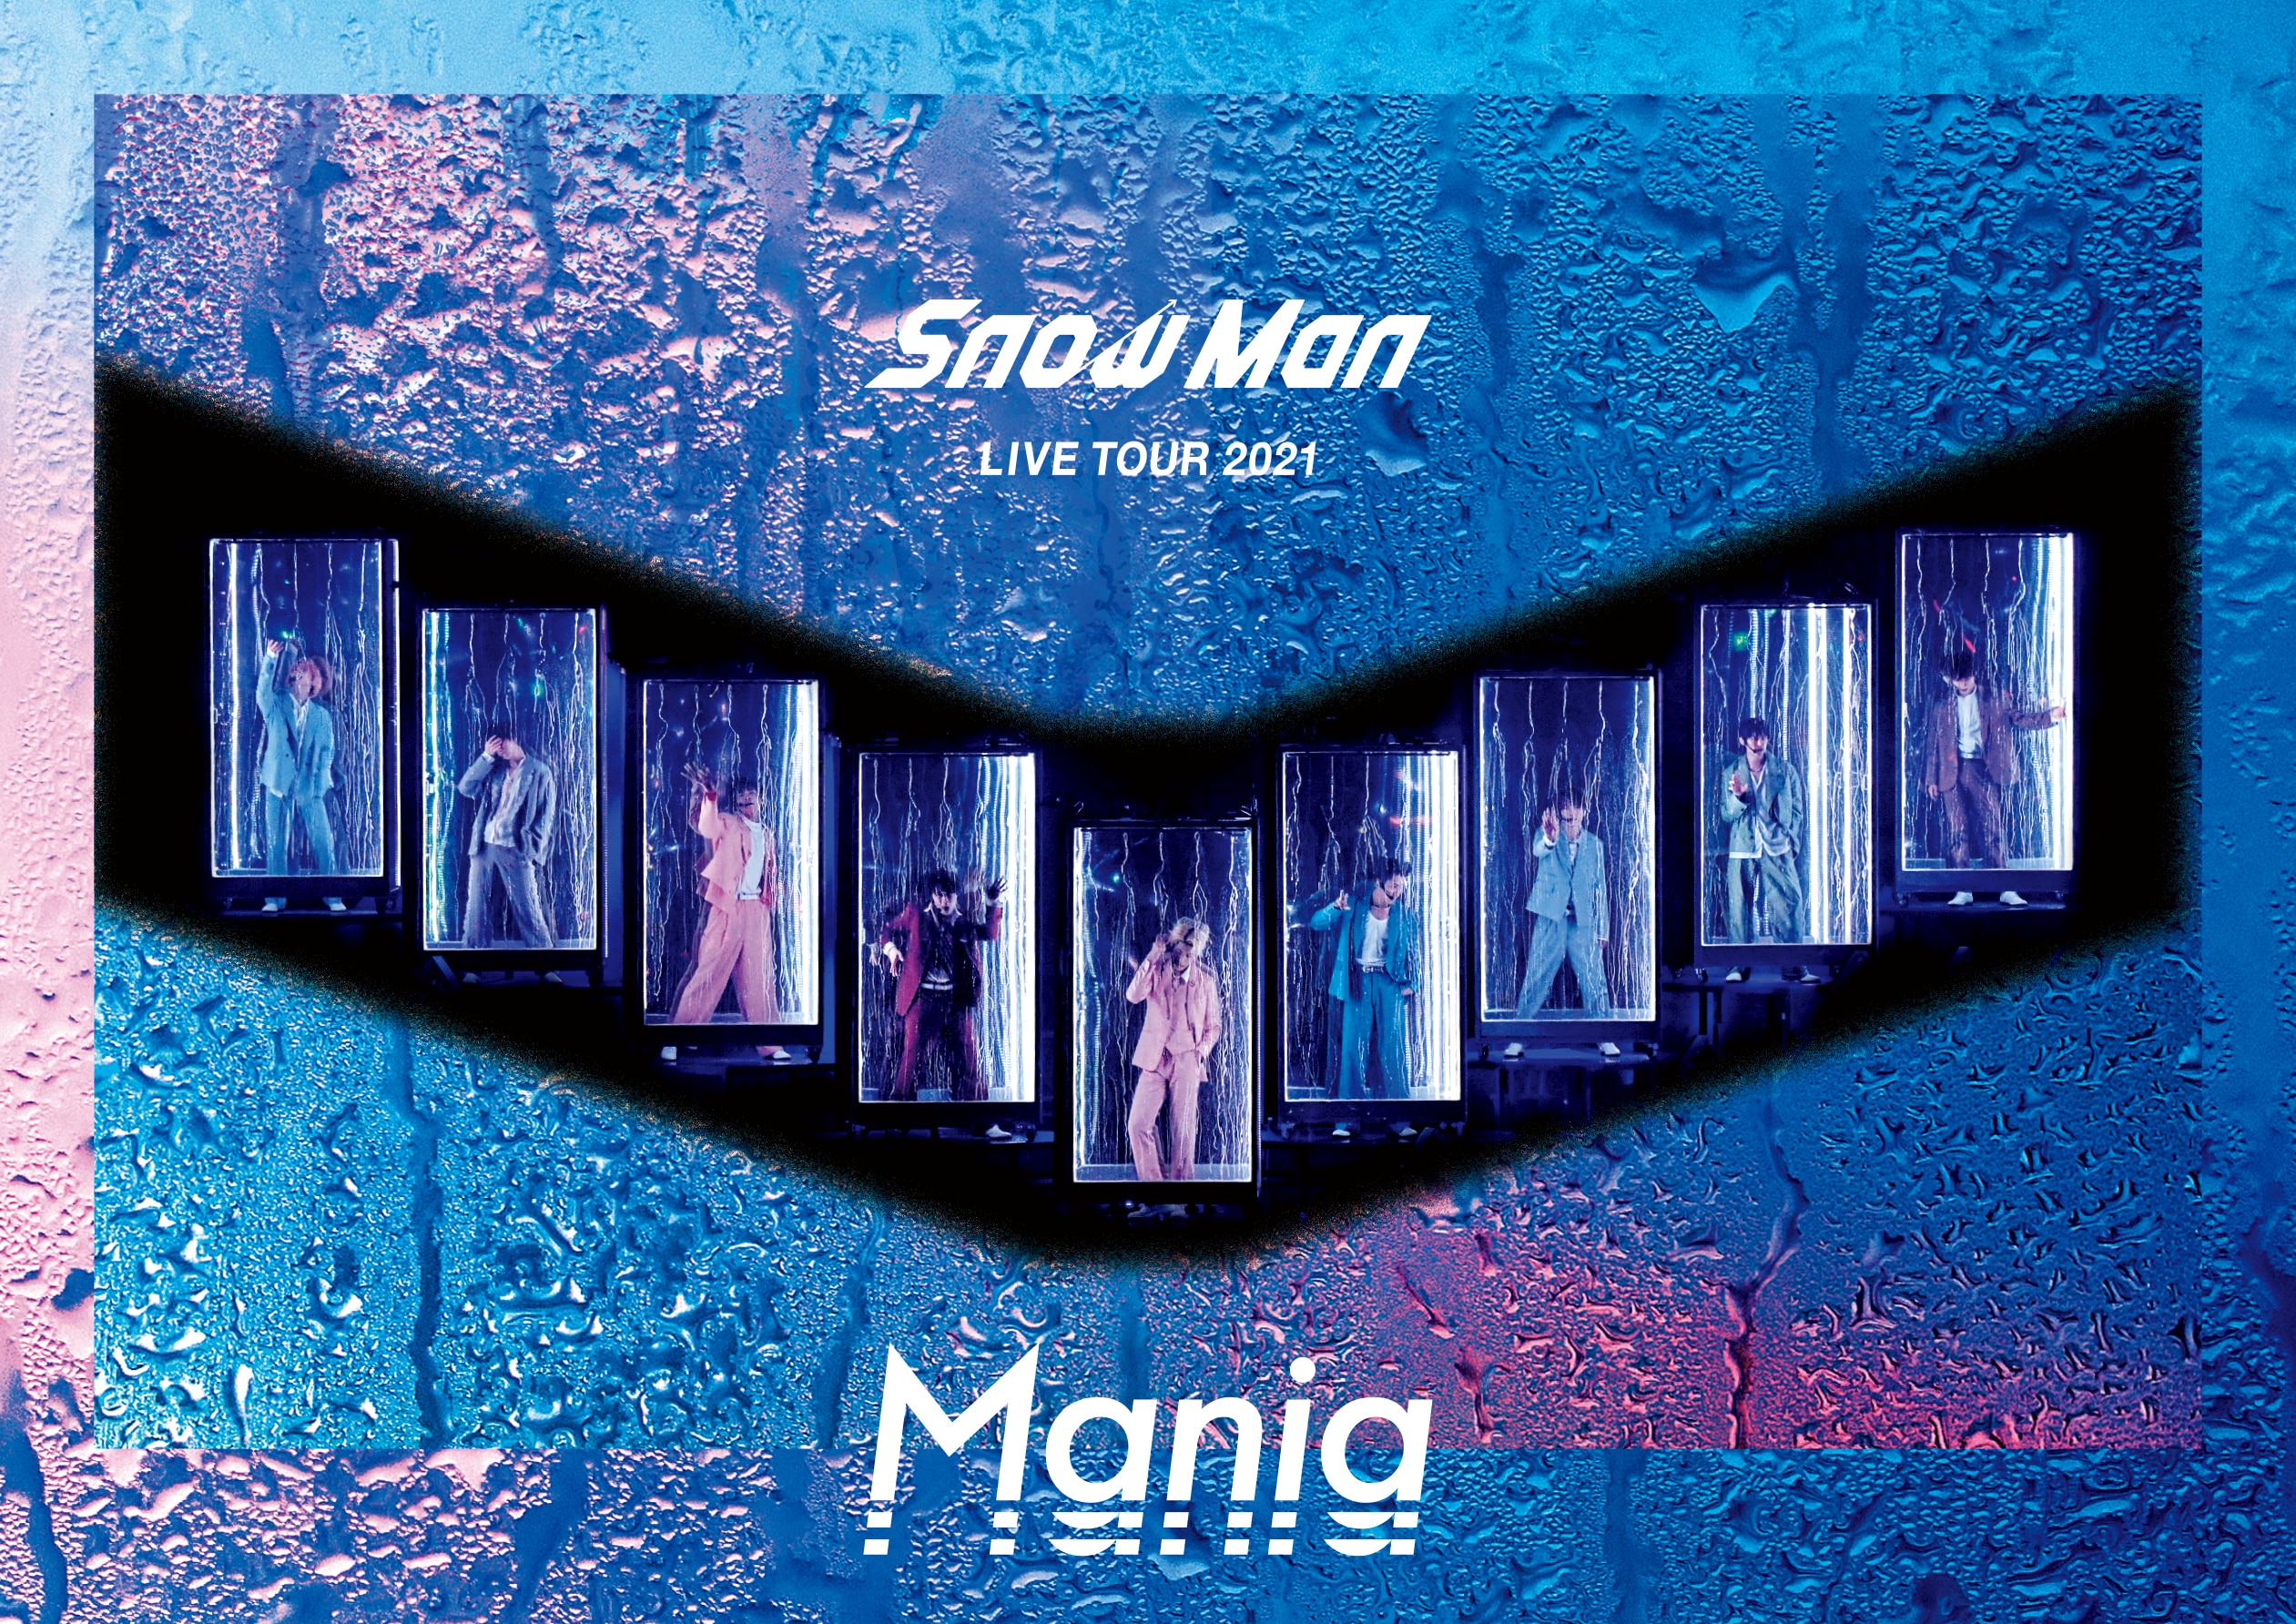 SnowMan LIVE TOUR 2021 Mania  初回盤のみ ミュージック DVD/ブルーレイ 本・音楽・ゲーム 市場割引セール